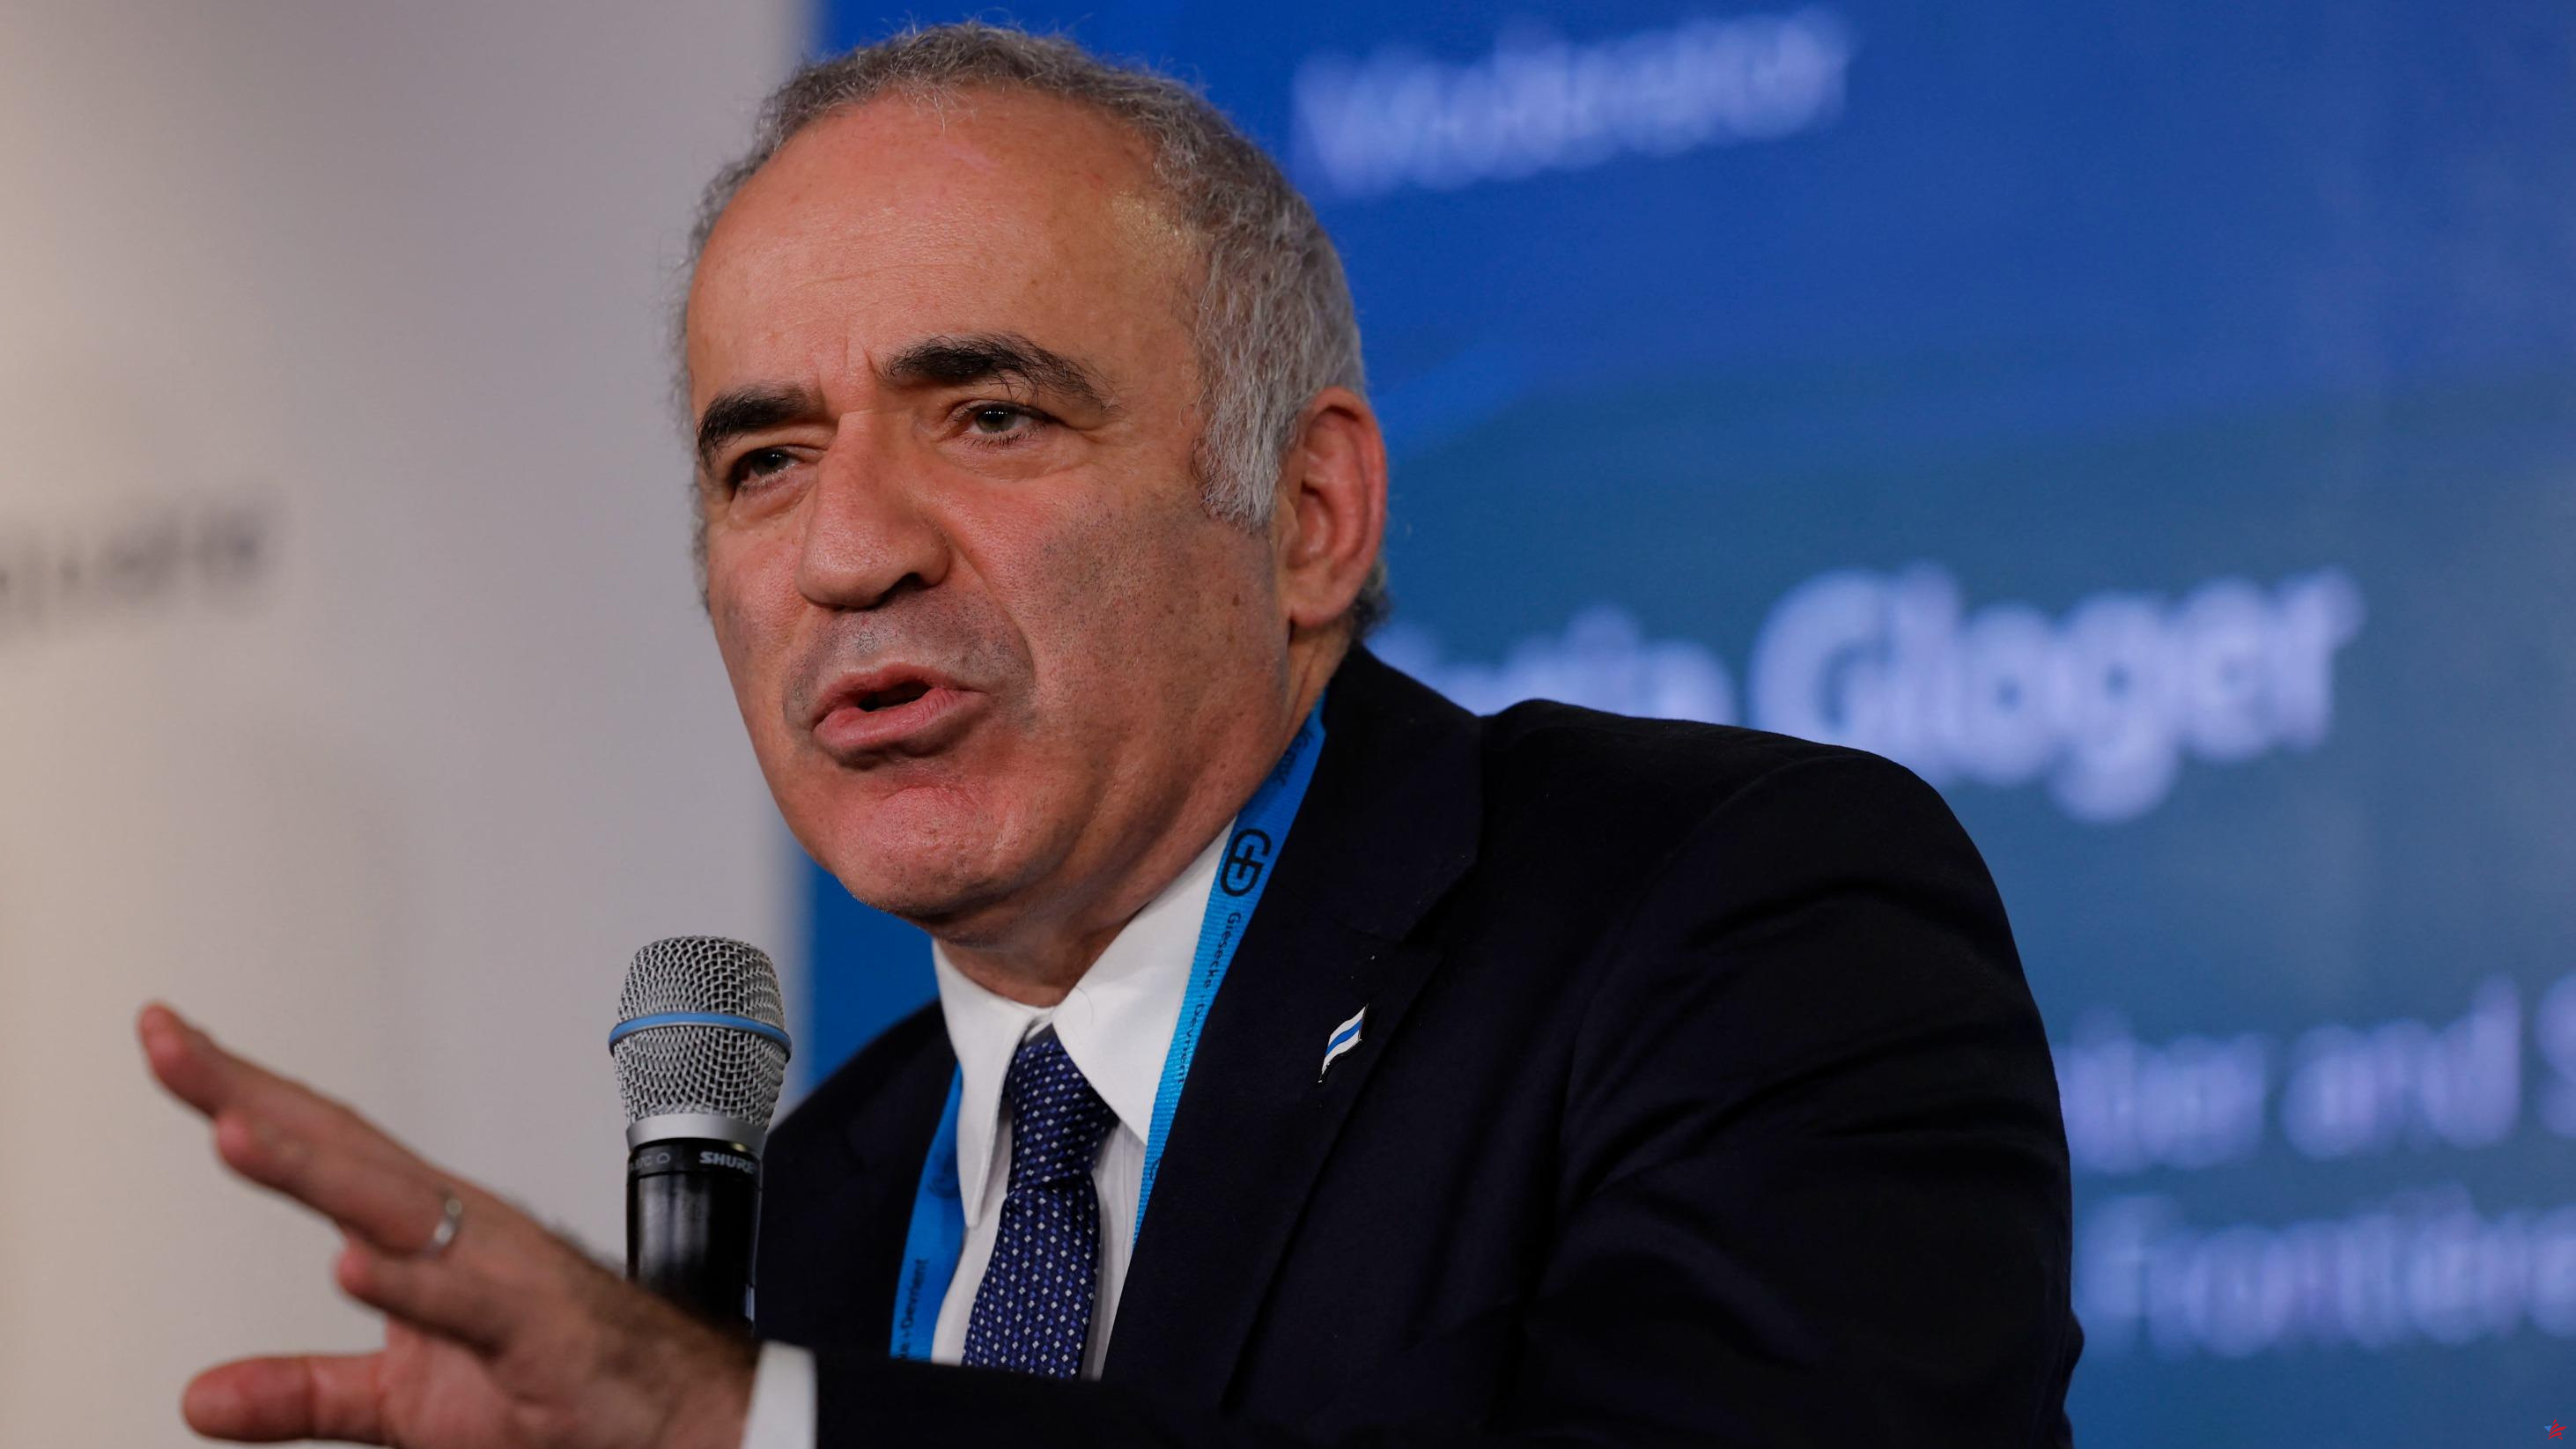 Gary Kasparov clasificado como “terrorista y extremista” por las autoridades rusas